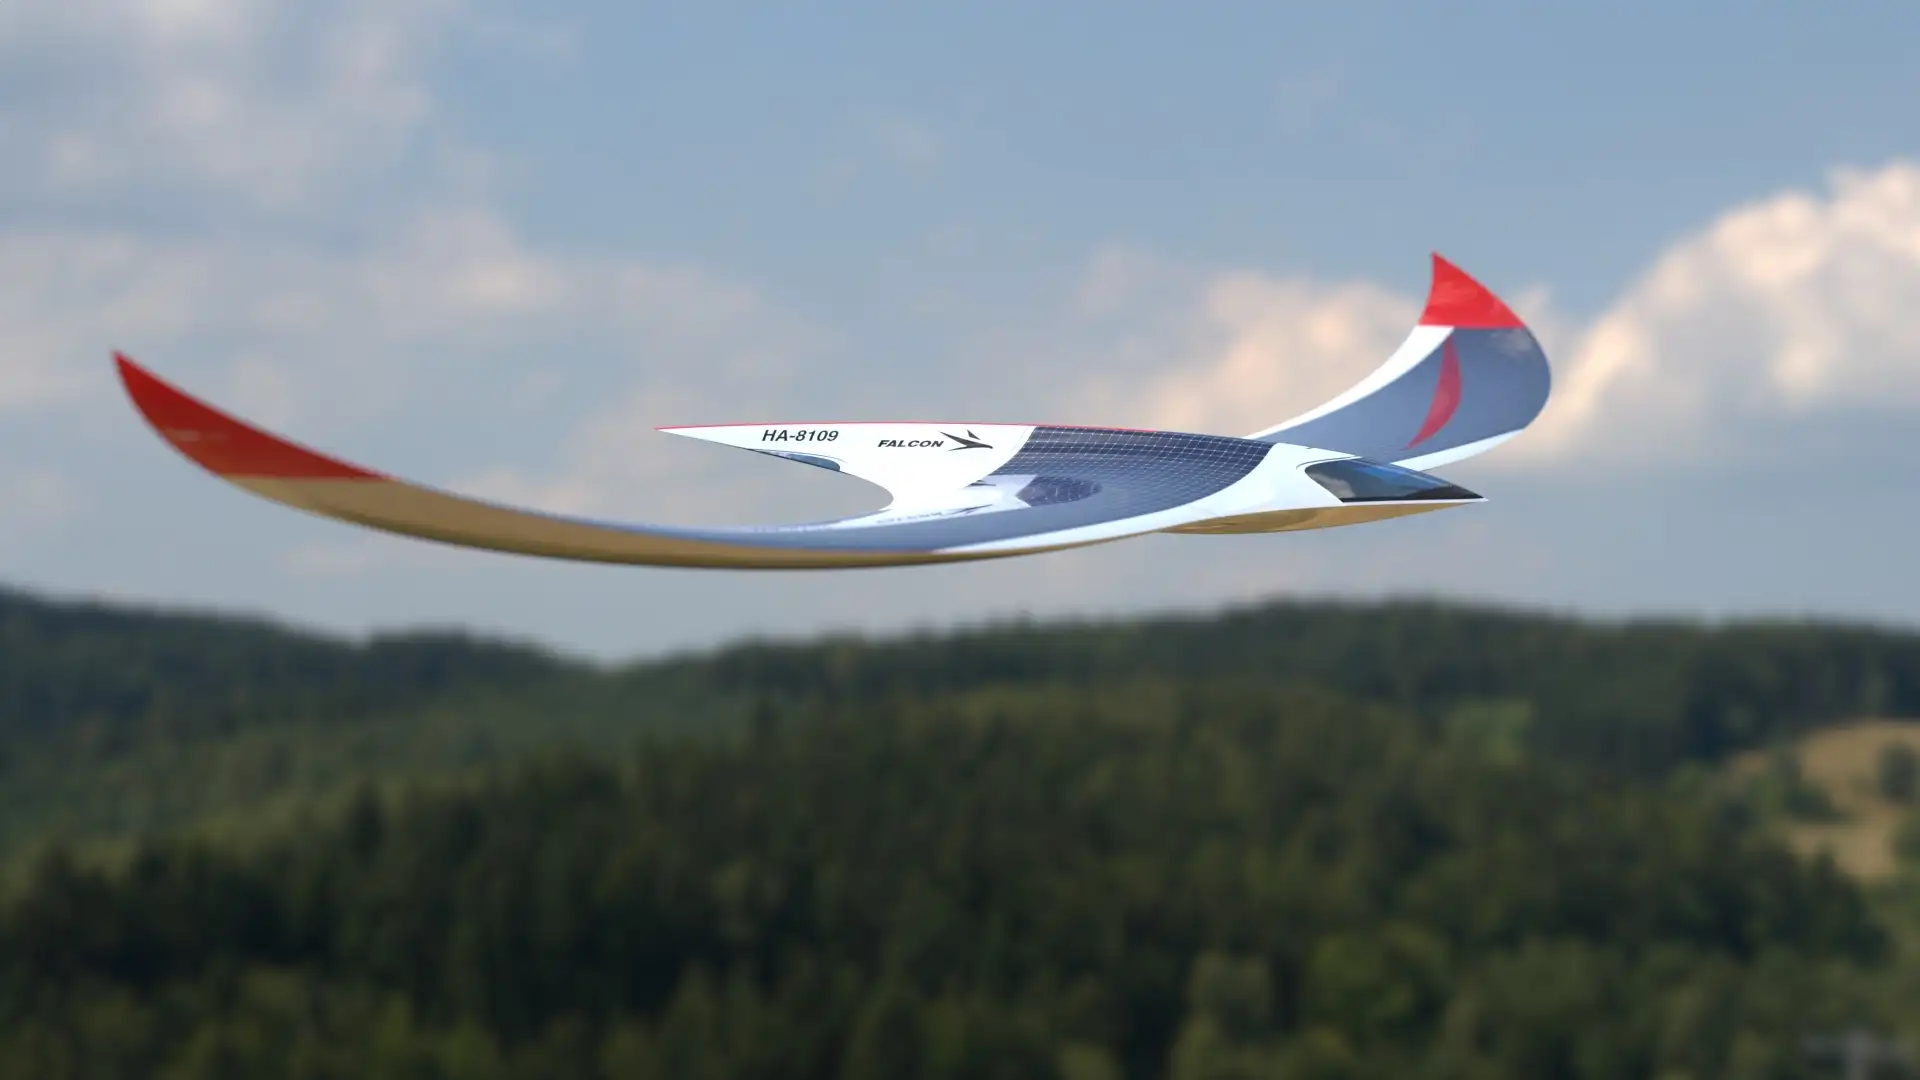 Así es el nuevo avión Falcon Solar: 0 contaminación y diseño aerodinámico